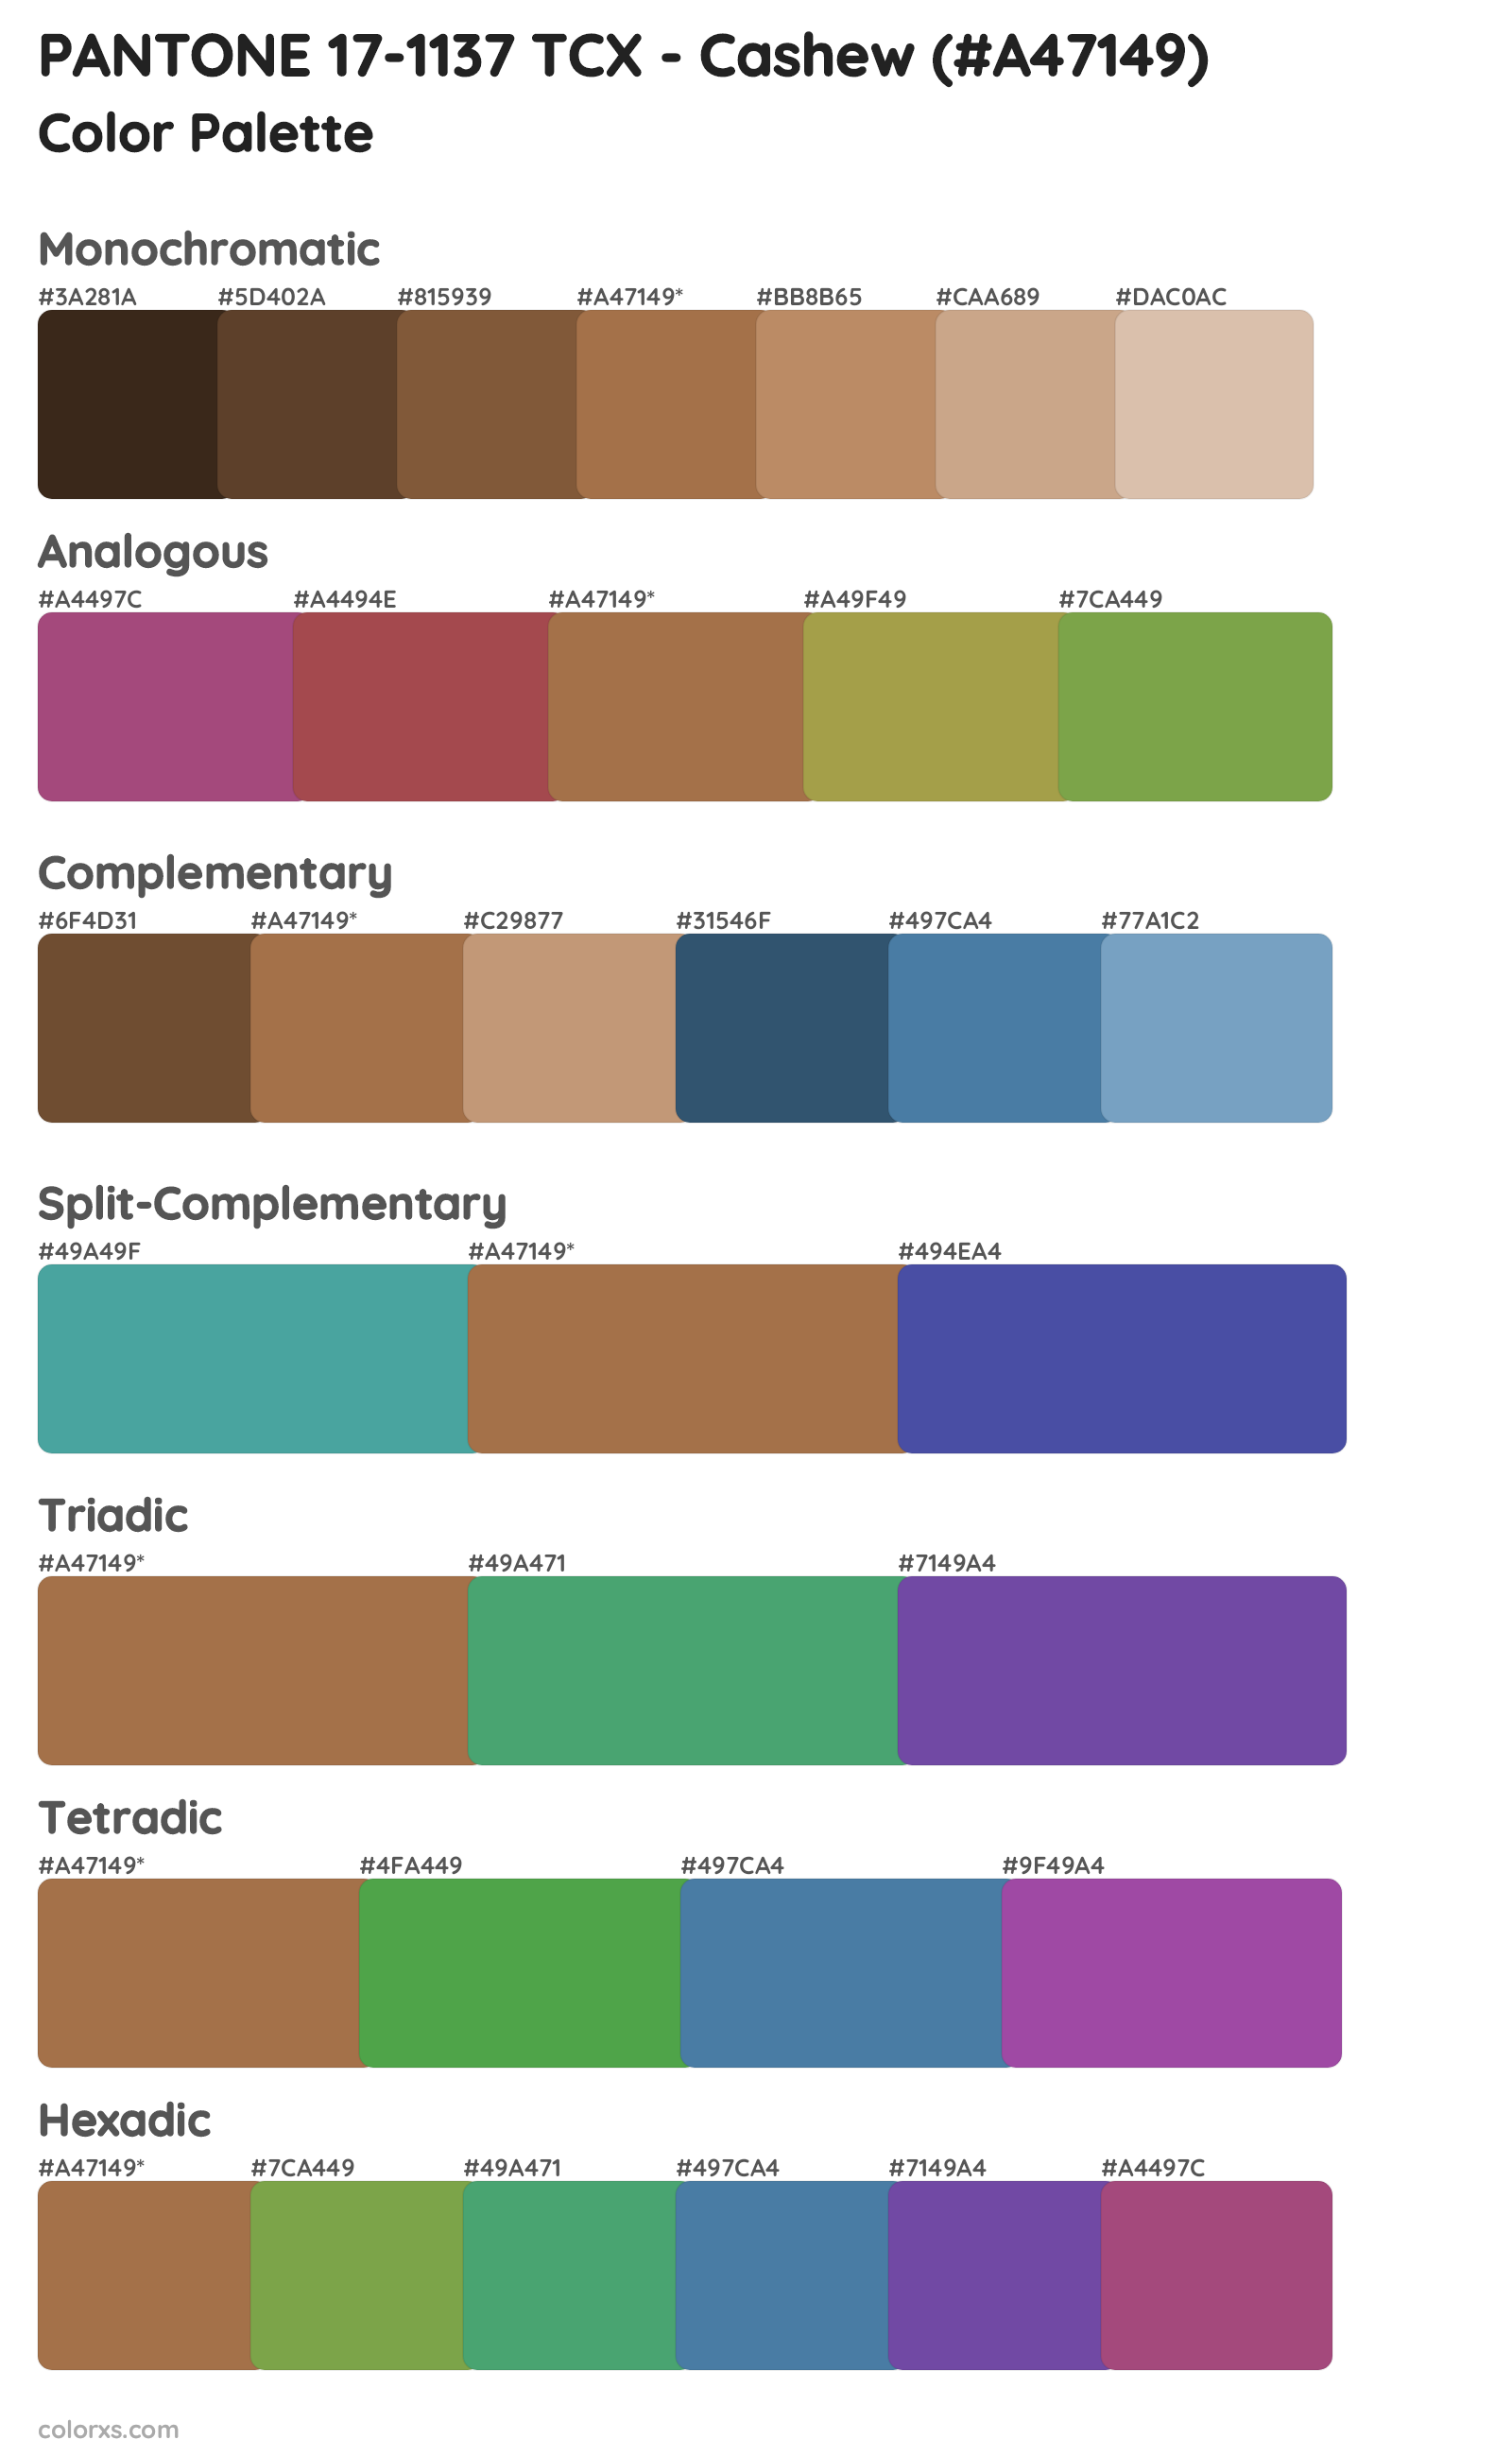 PANTONE 17-1137 TCX - Cashew Color Scheme Palettes